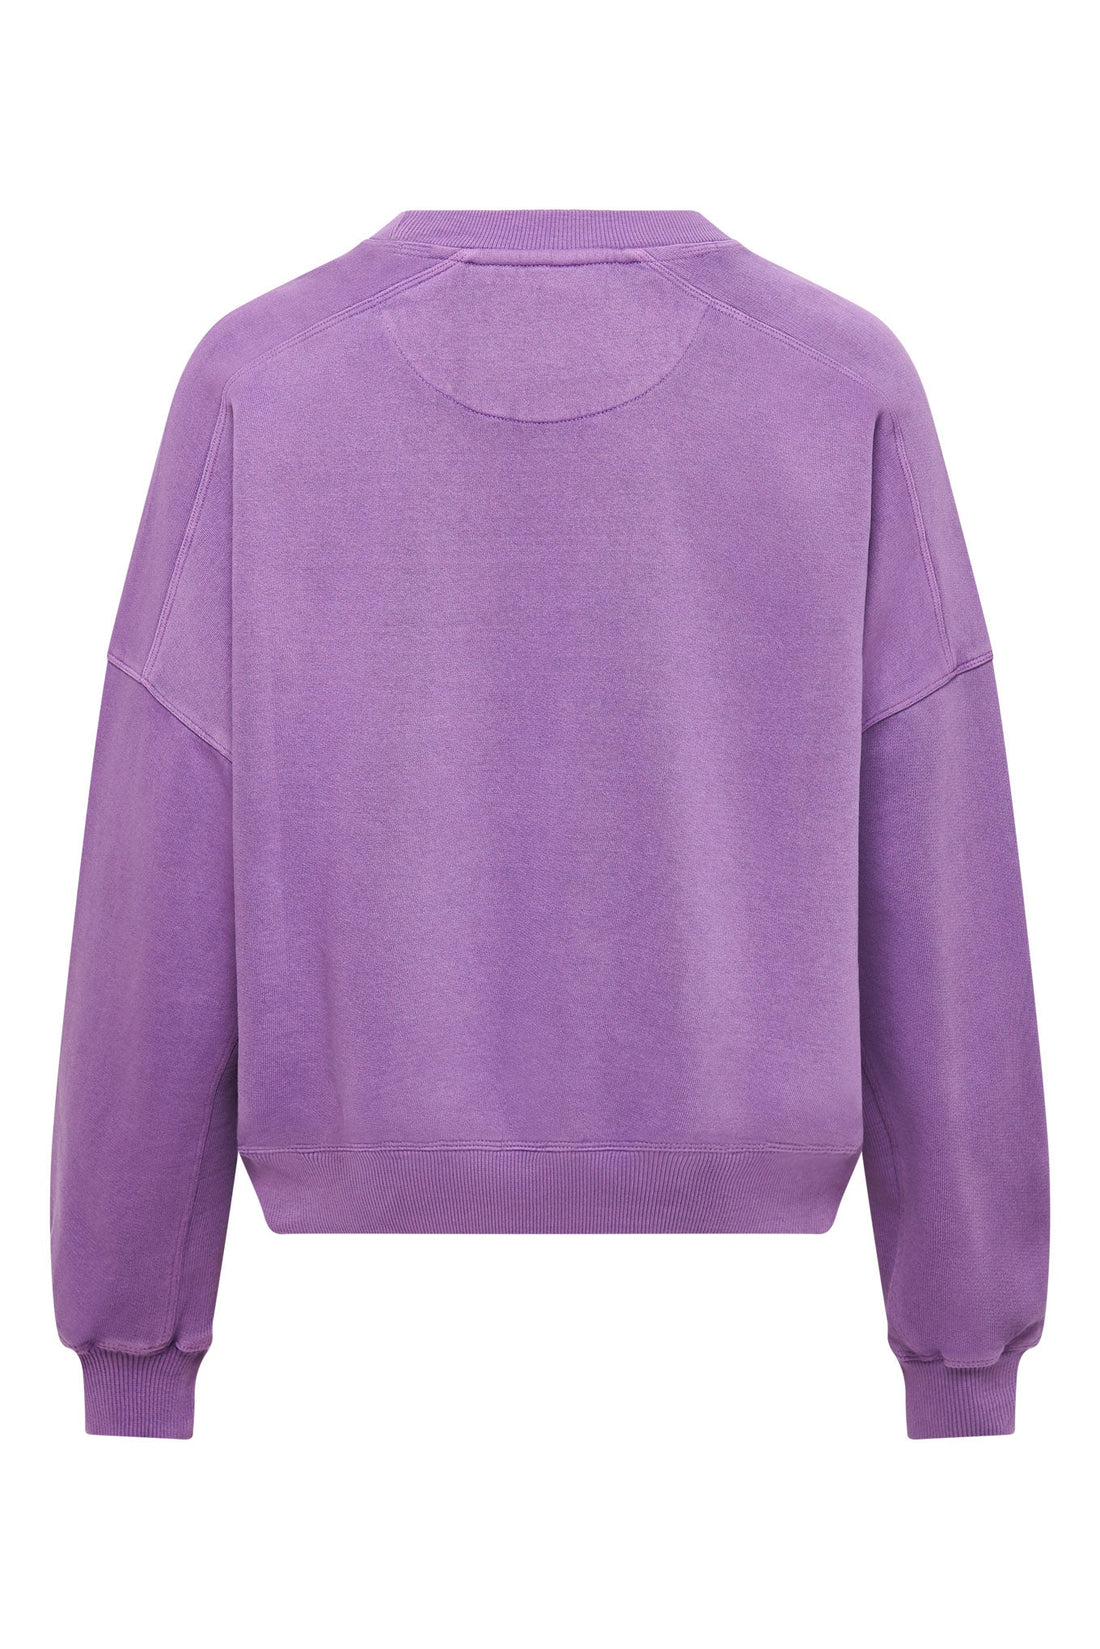 DAWN Sweater Organic Cotton - Lilac